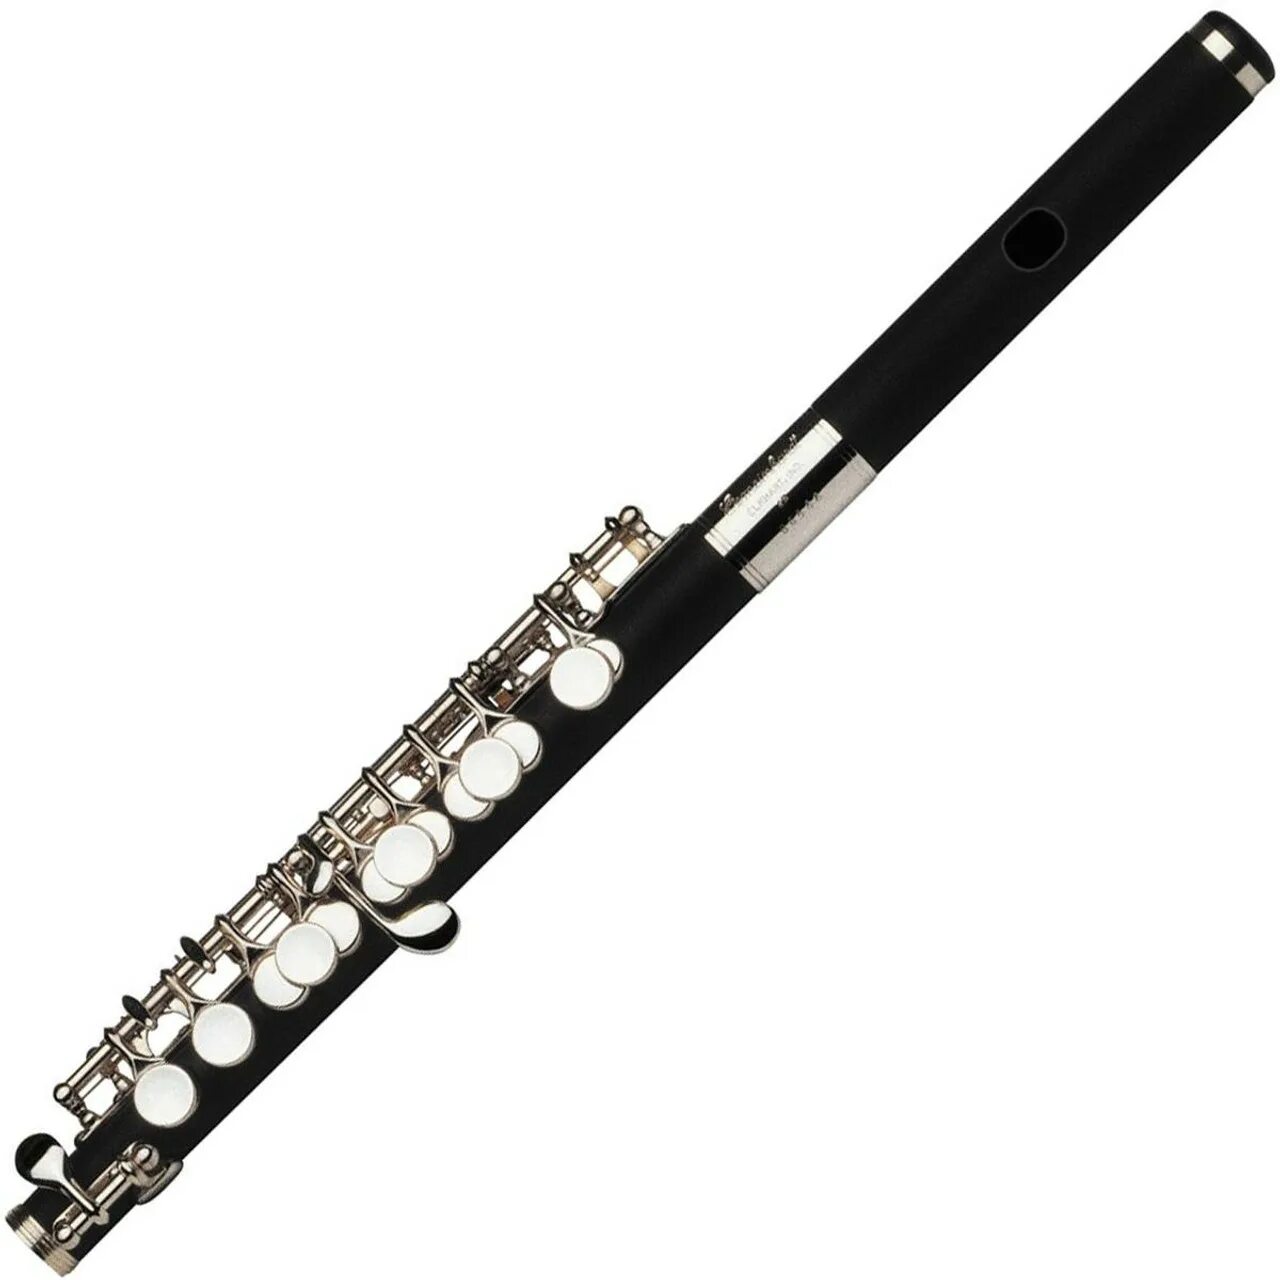 Flute. Eurofon m-1102 флейта-Пикколо. Пикколо музыкальный инструмент. Малая флейта. Прозрачная флейта.